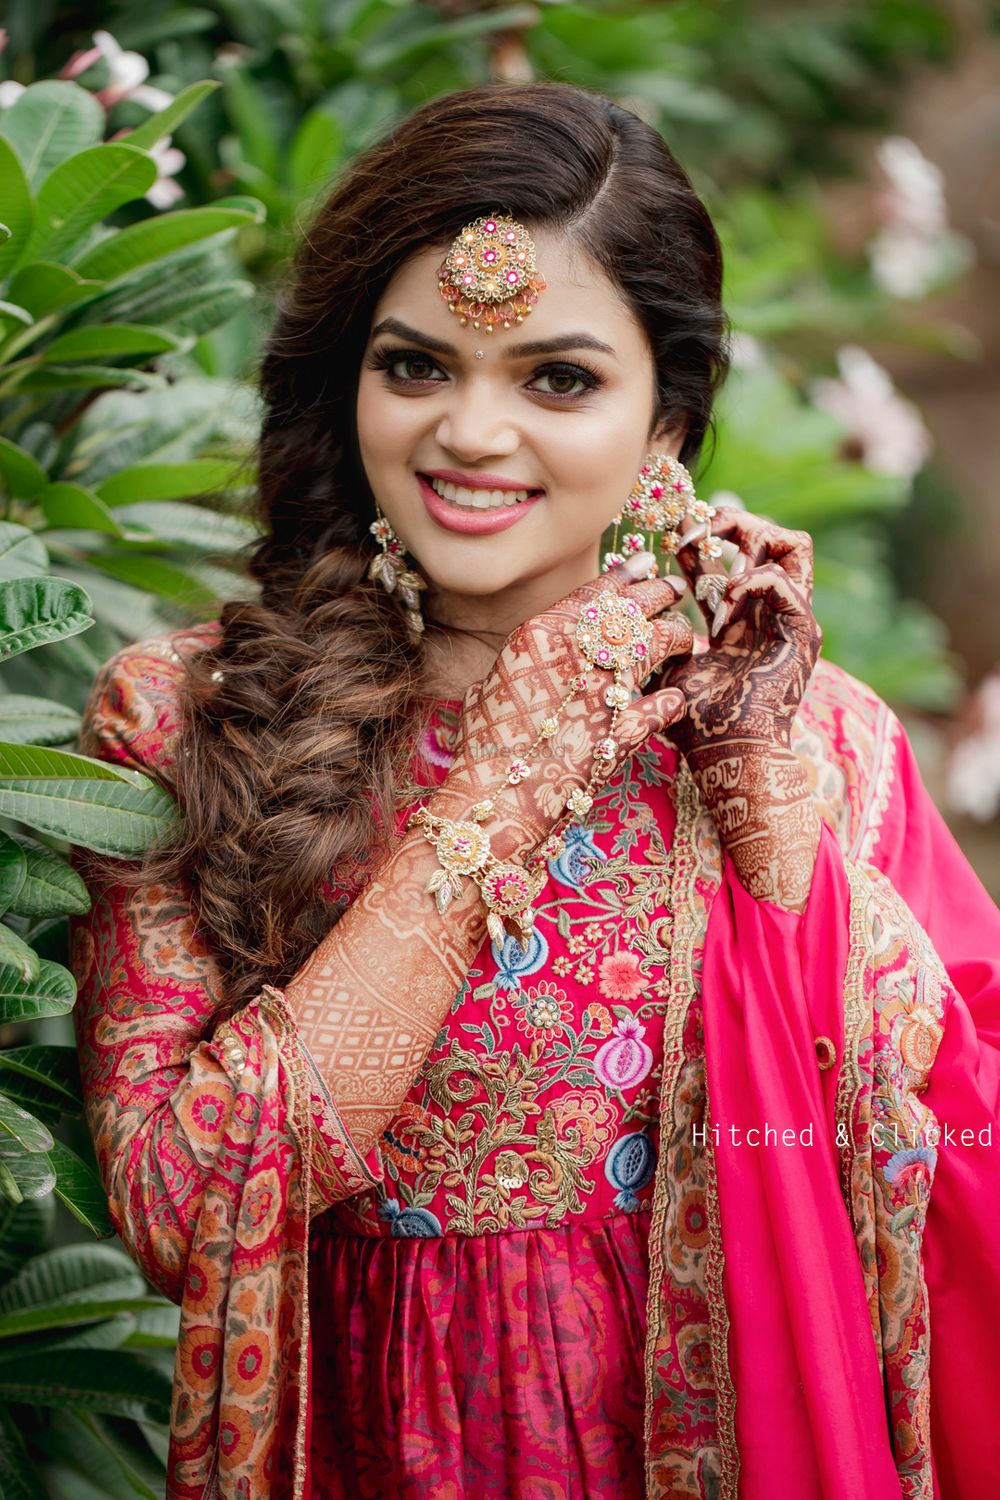 Photo From Surbhi Kanda Agarwal - By Bianca Louzado Creative Make-up and Hair Design